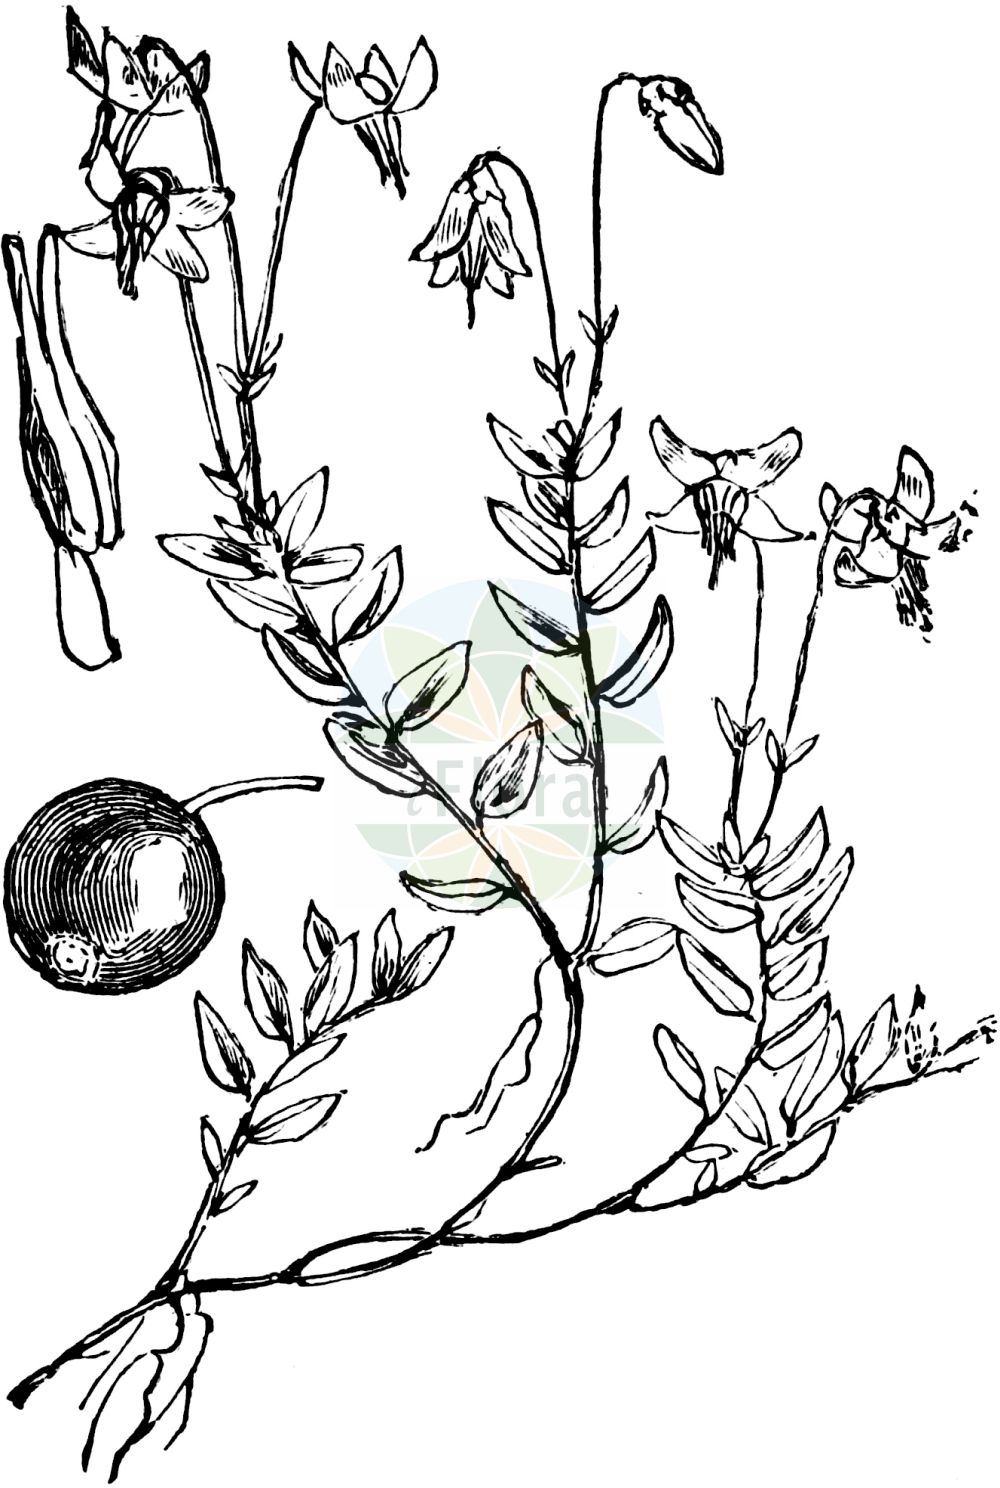 Historische Abbildung von Vaccinium oxycoccos (Gewöhnliche Moosbeere - Cranberry). Das Bild zeigt Blatt, Bluete, Frucht und Same. ---- Historical Drawing of Vaccinium oxycoccos (Gewöhnliche Moosbeere - Cranberry). The image is showing leaf, flower, fruit and seed.(Vaccinium oxycoccos,Gewöhnliche Moosbeere,Cranberry,Oxycoccus palustris,Oxycoccus quadripetalus,Vaccinium oxycoccos,Gewoehnliche Moosbeere,Cranberry,European Cranberry,Mossberry,Small Cranberry,Vaccinium,Heidelbeere,Blueberry,Ericaceae,Heidekrautgewächse,Heath family,Blatt,Bluete,Frucht,Same,leaf,flower,fruit,seed,Fitch et al. (1880))